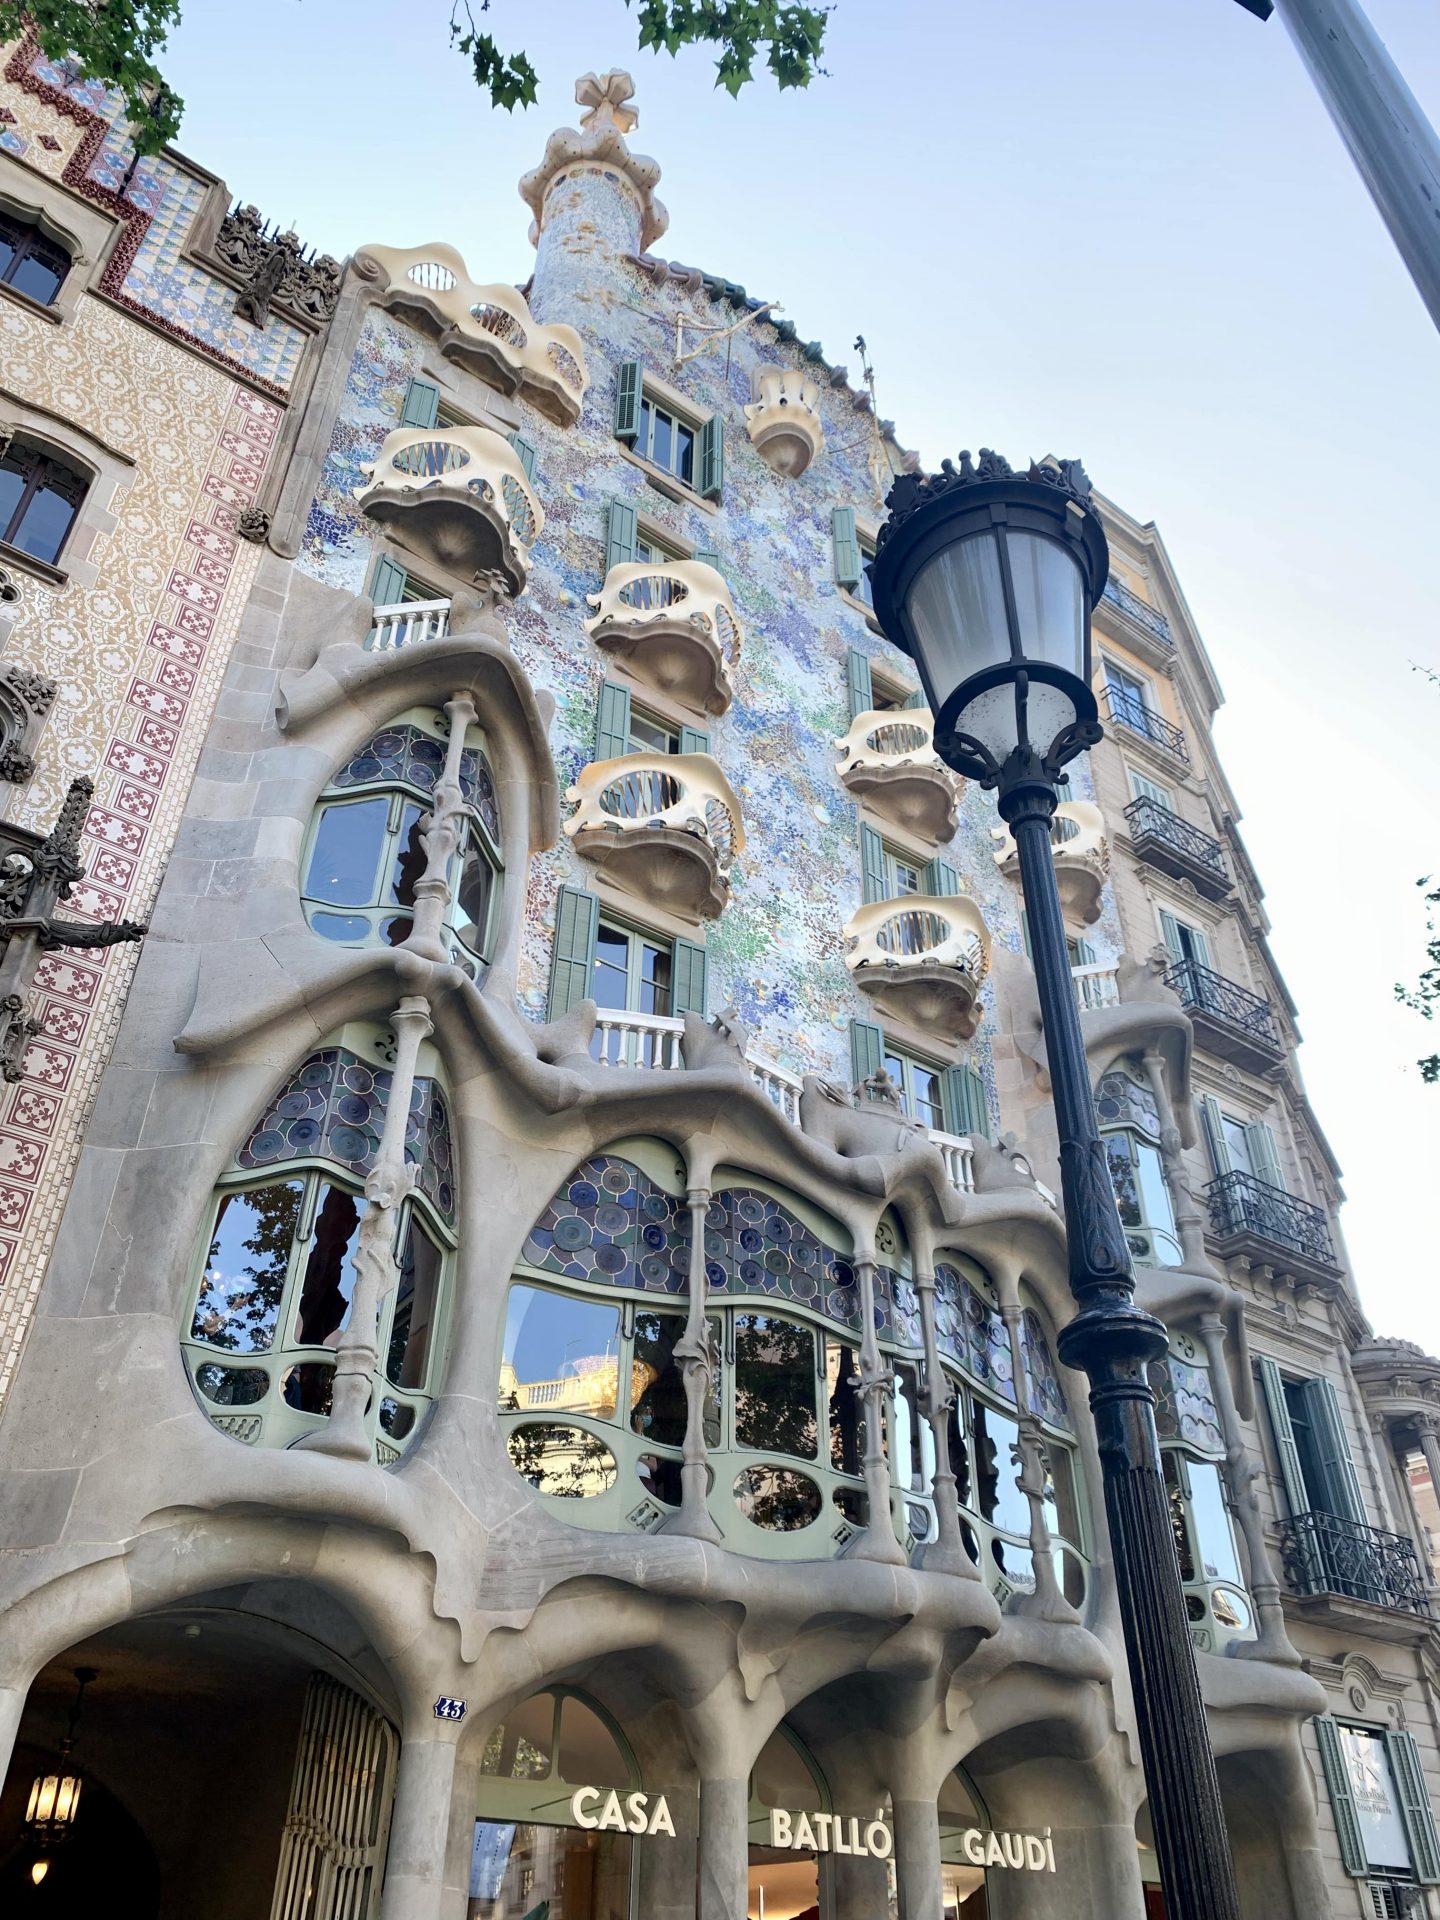 Casa Battlo Gaudi, Barcelone